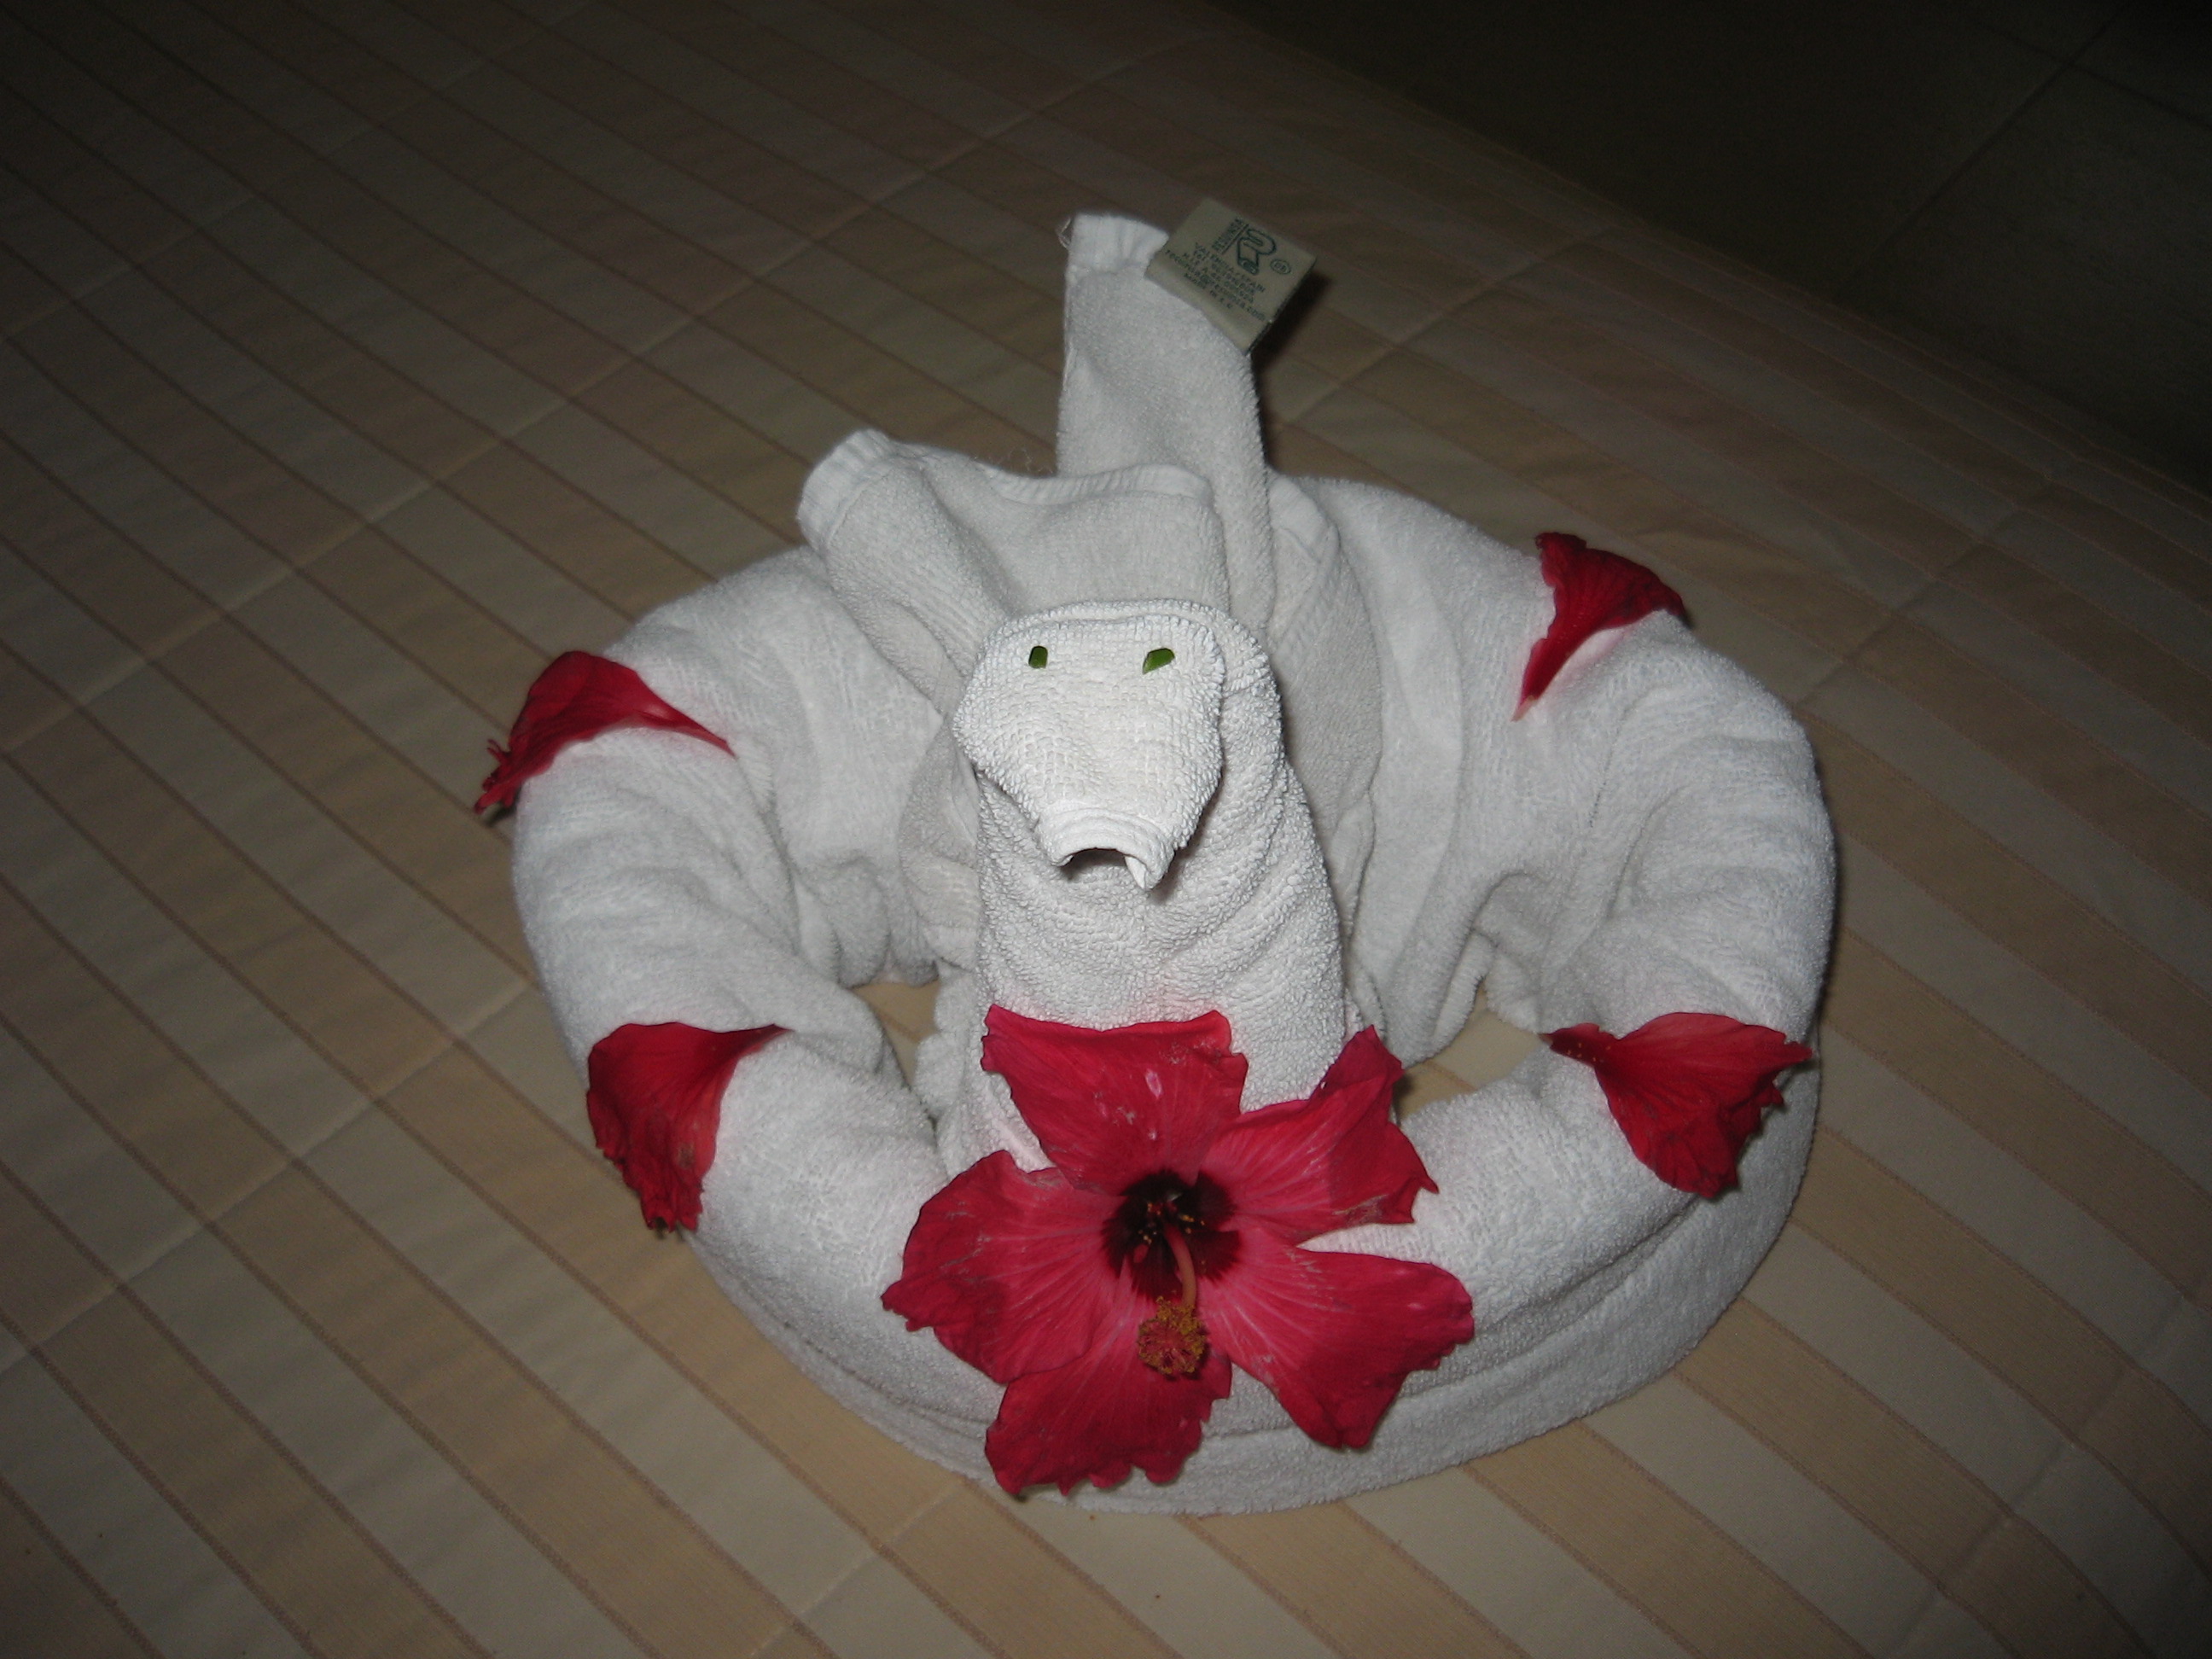 Swan towel origami